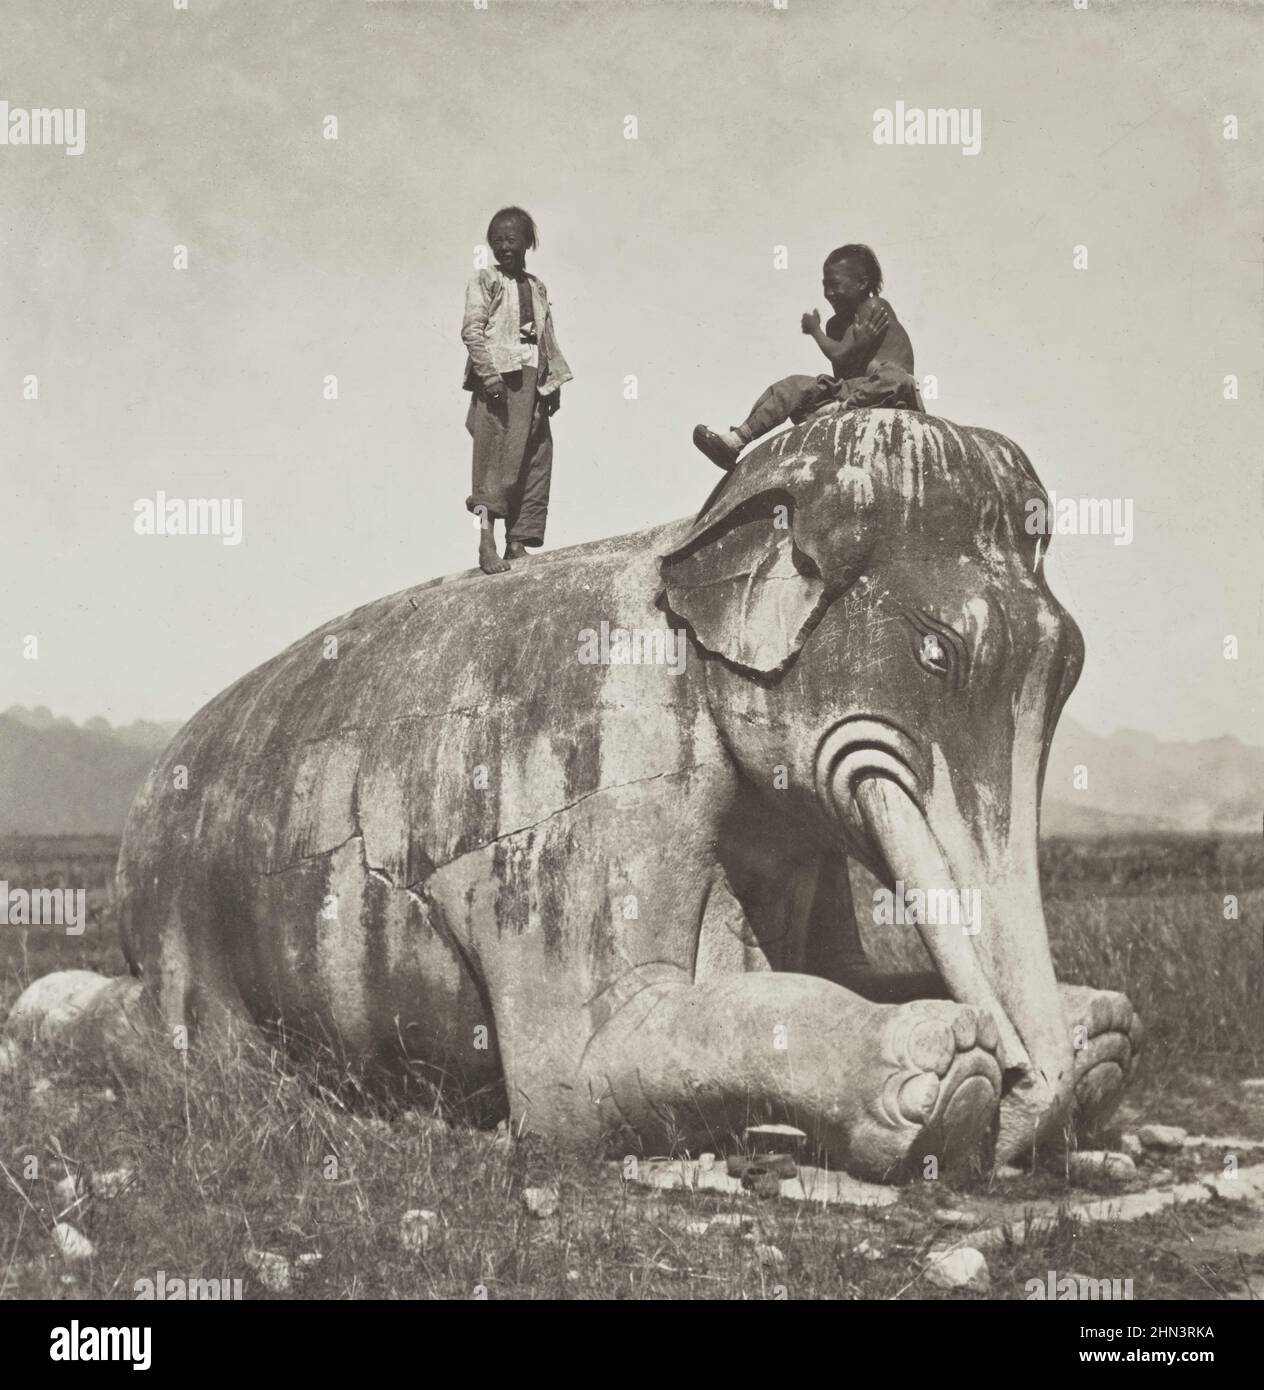 Foto vintage de niños chinos con cola en la parte superior de las estatuas de elefantes arrodillados en la avenida de los animales de piedra, las tumbas Ming. Norte de China. Julio de 190 Foto de stock